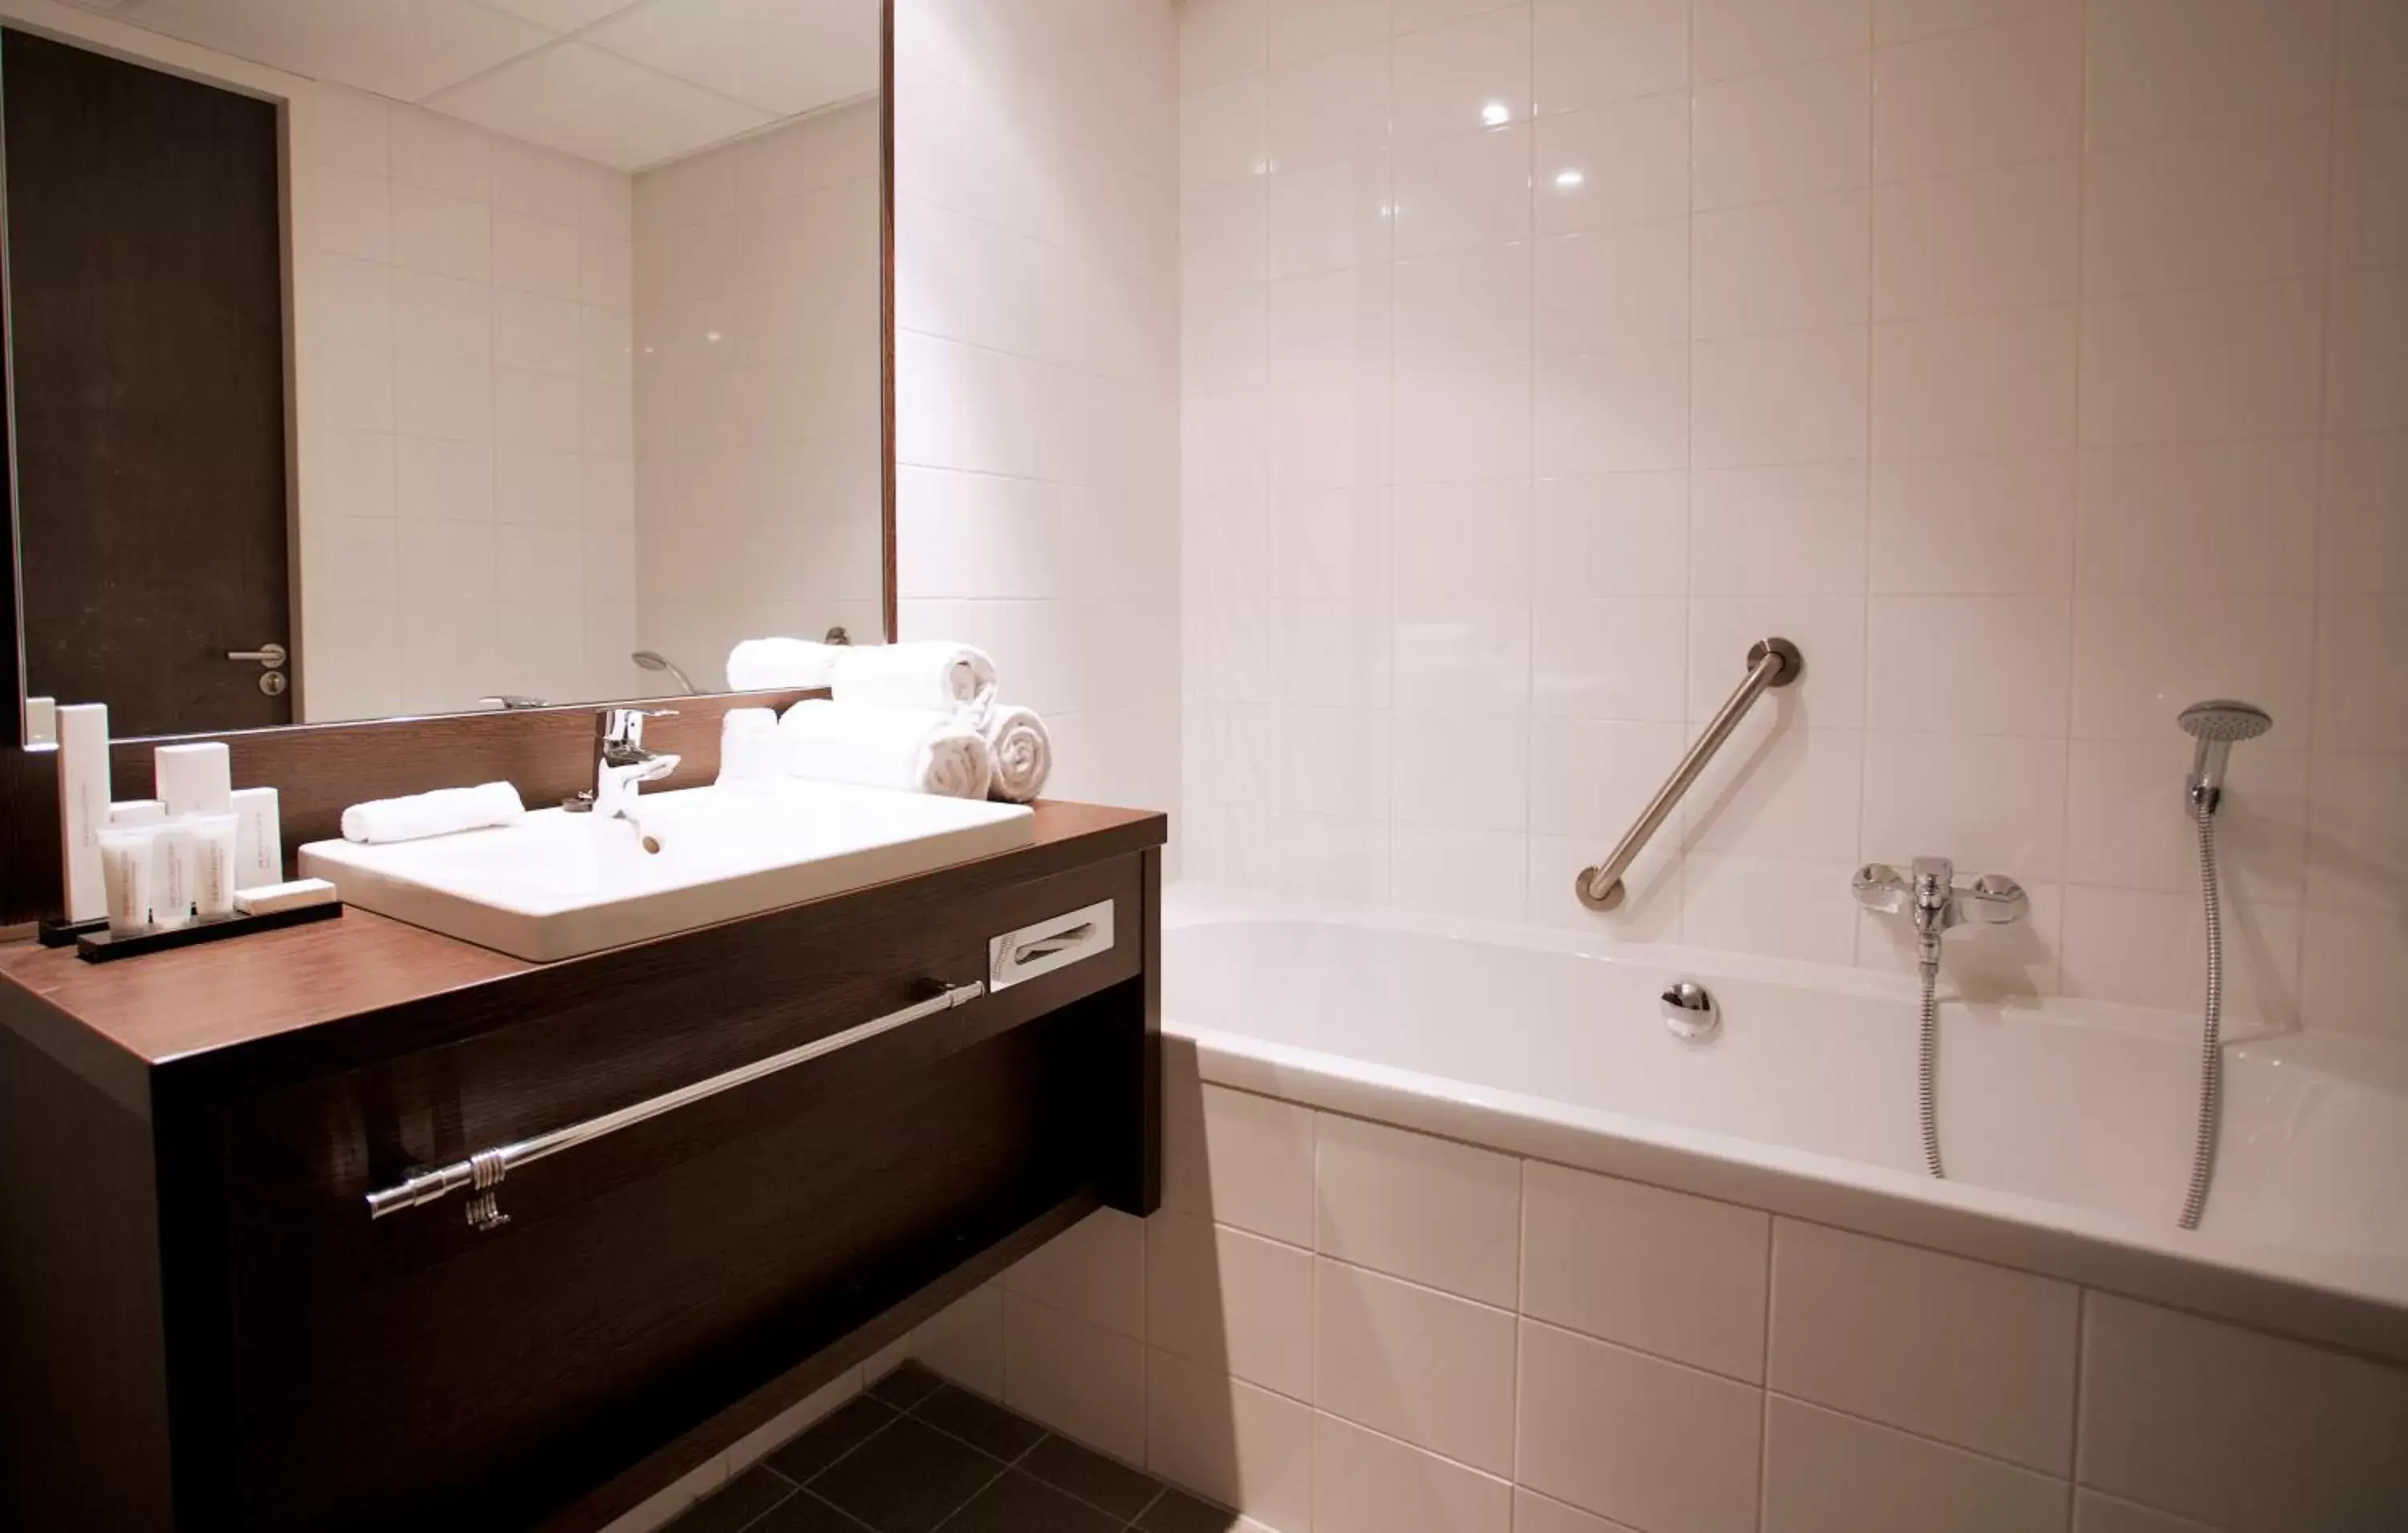 Bathroom in Hampshire Hotel - Delft Centre